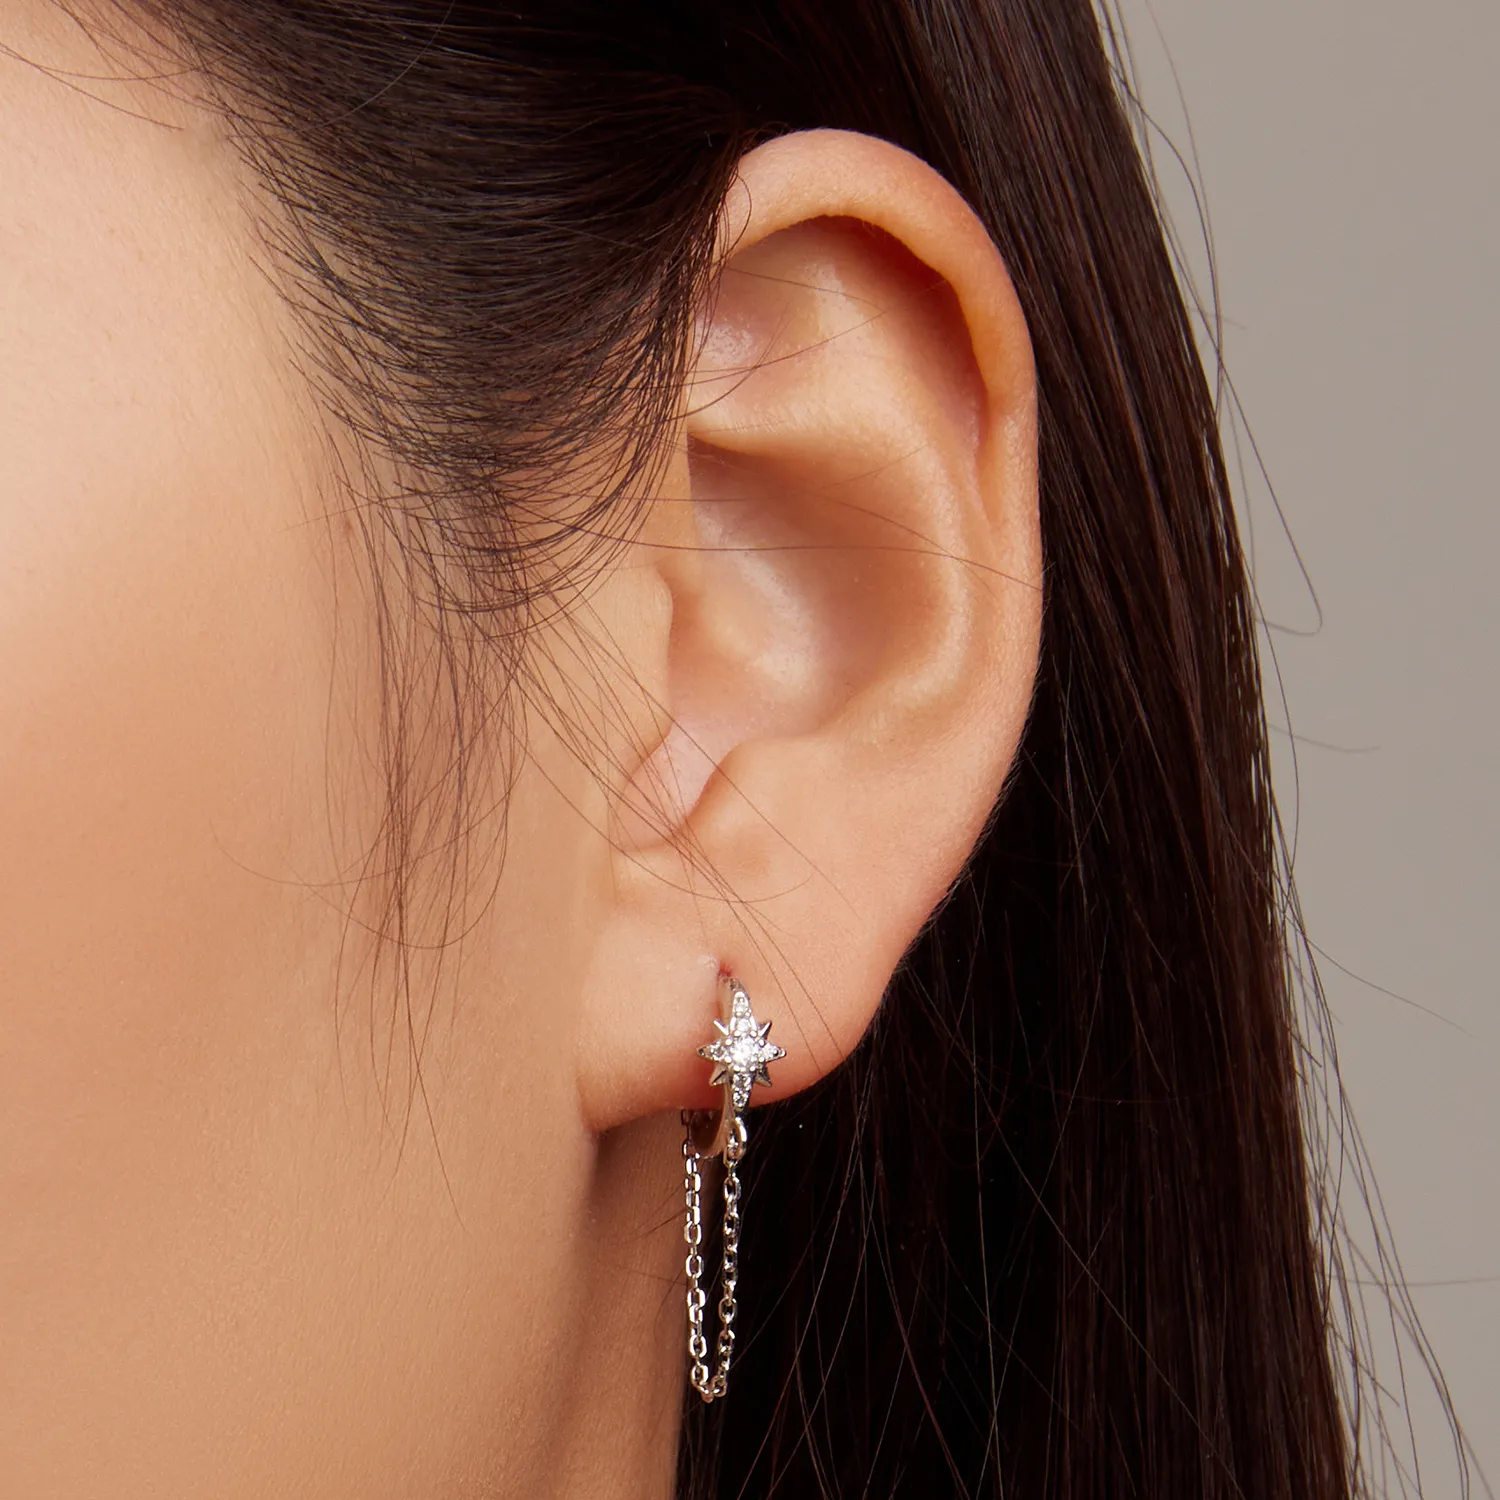 Pandora Style Mans Star Hoop Earrings - BSE699